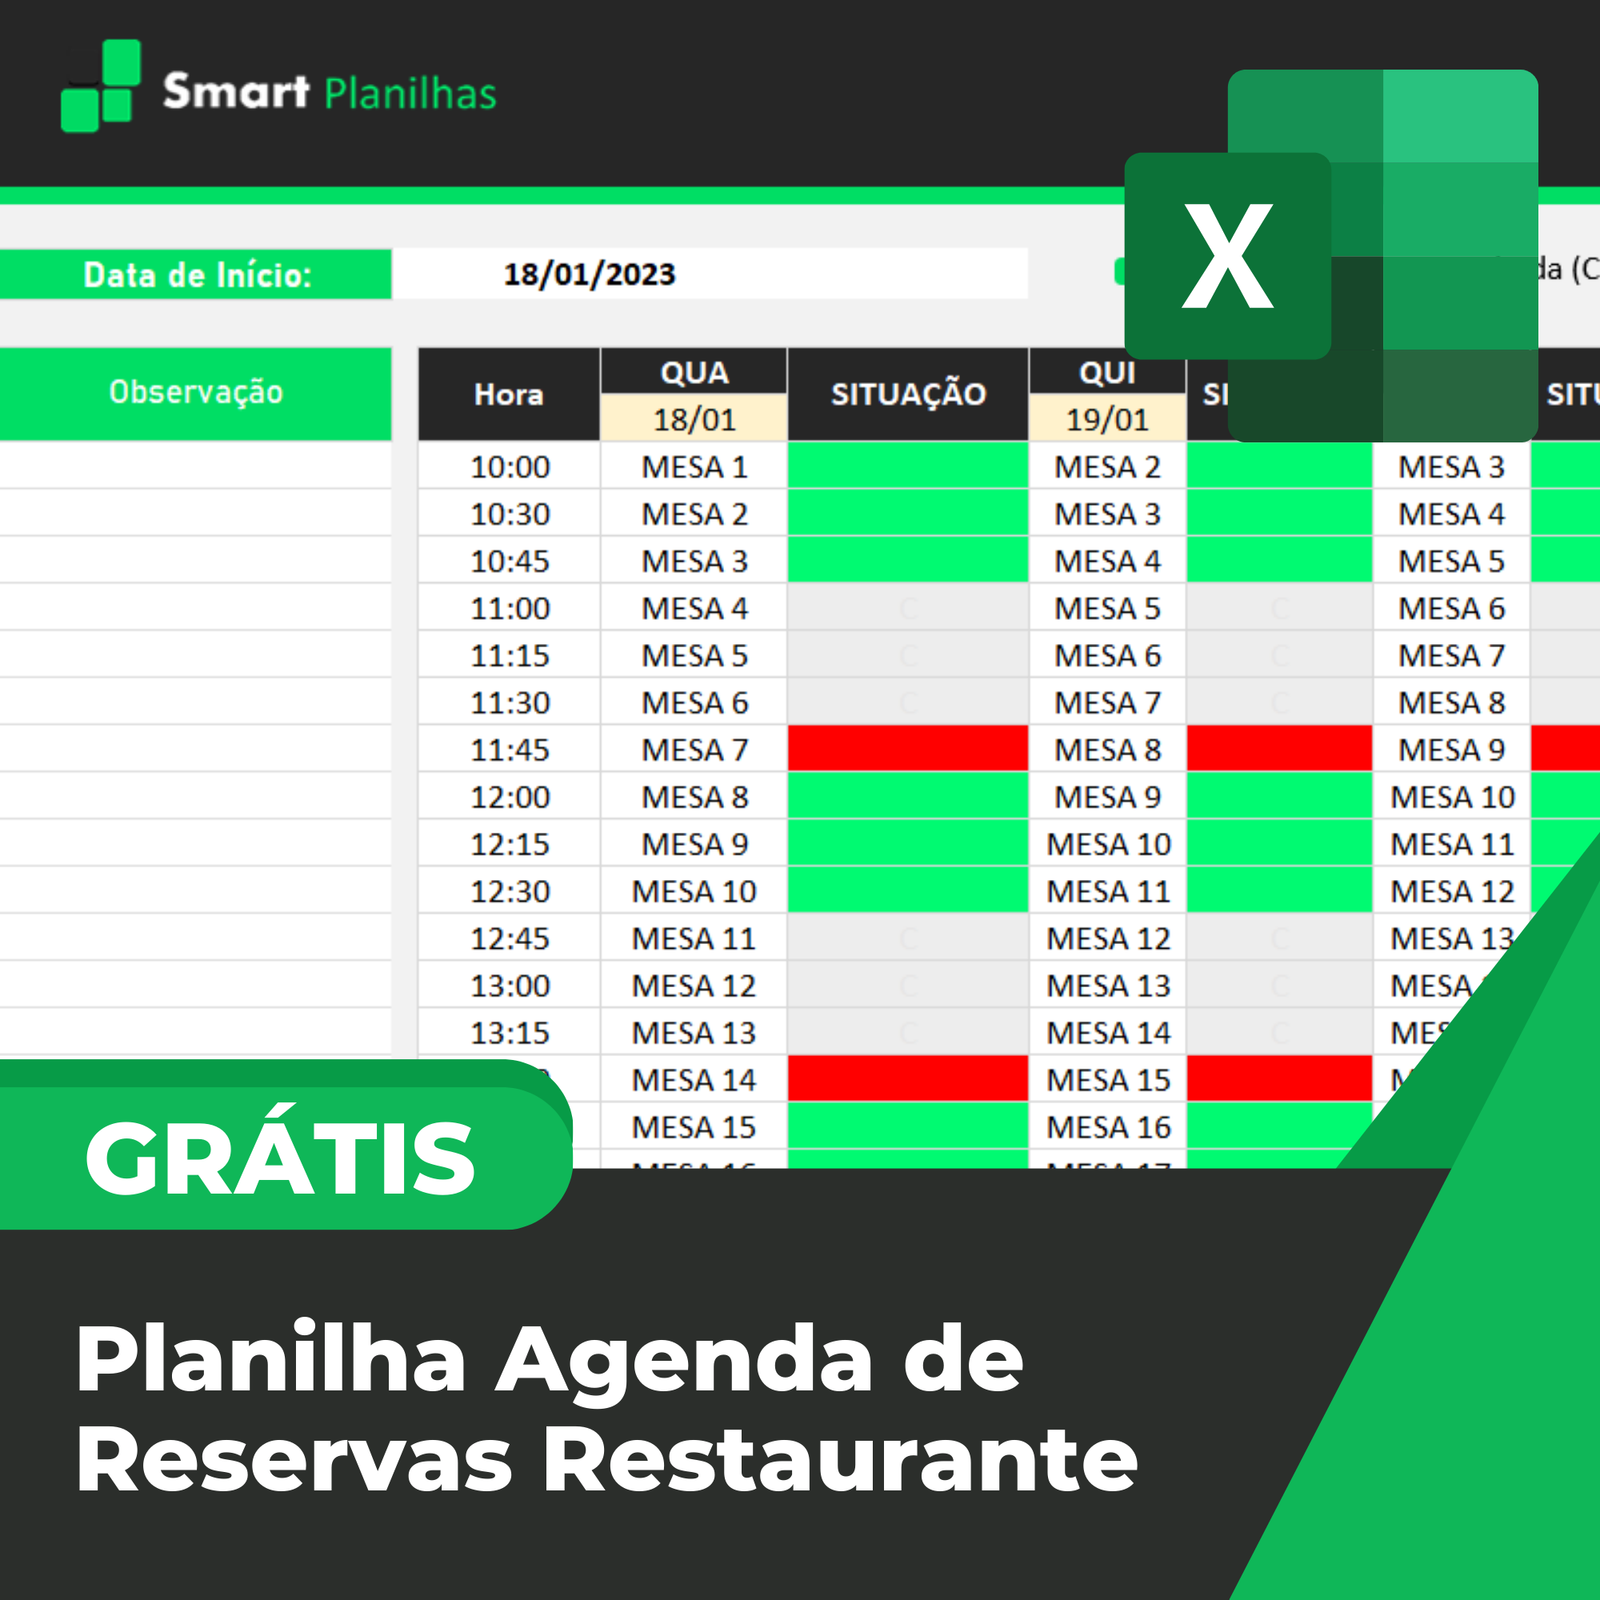 Planilha Agenda De Reservas Restaurante Smart Planilhas 9738